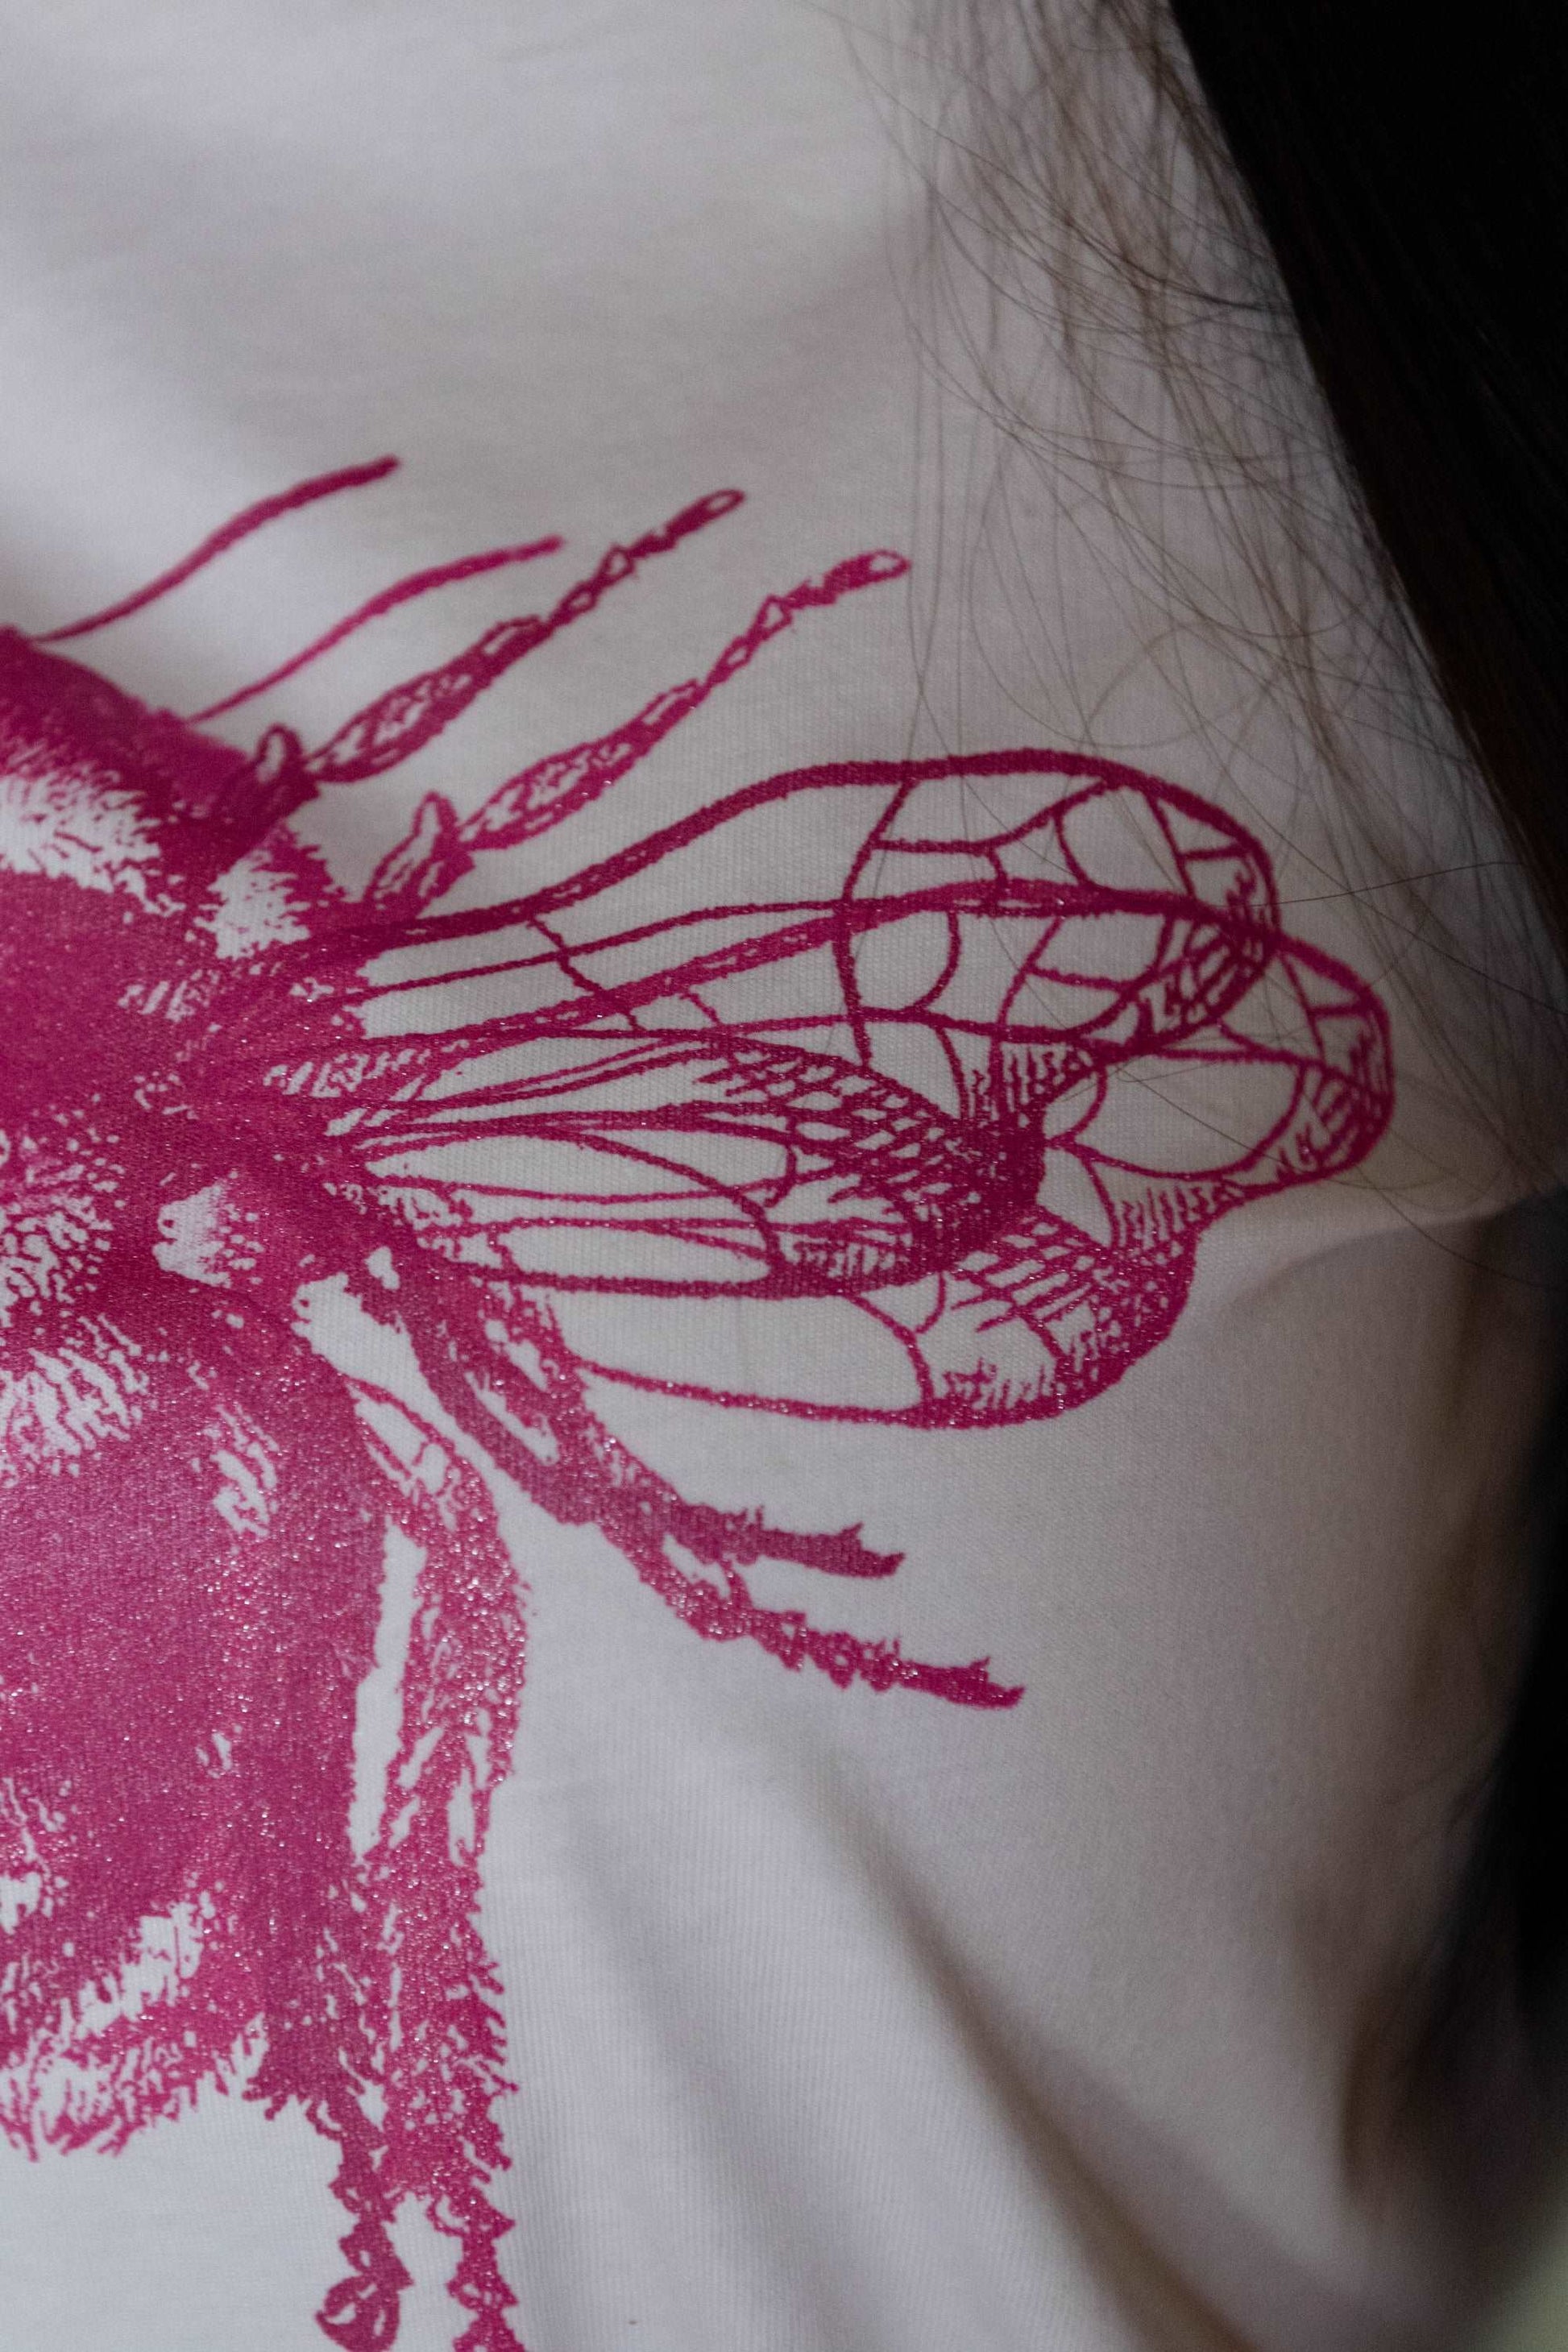 Majica s pink čebelo dvojni tisk - unisex model / 100% organski bombaž